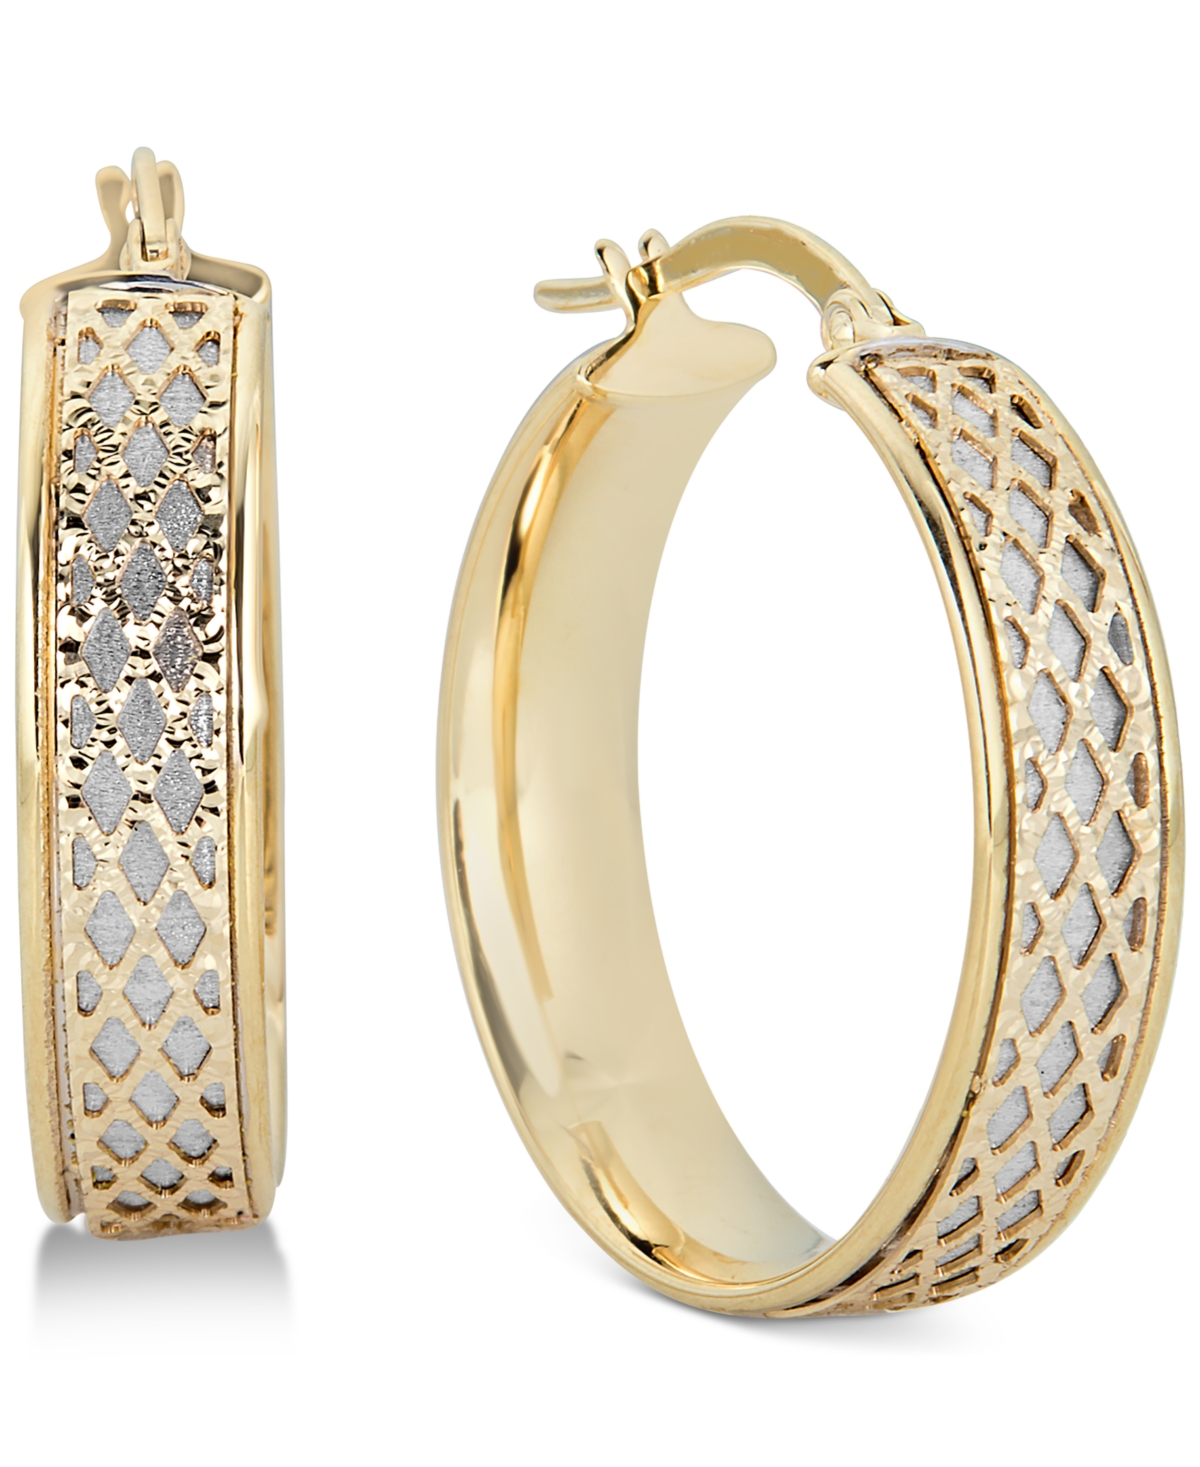 Lattice-Design Hoop Earrings in 14k White Gold and 14k Gold - Gold